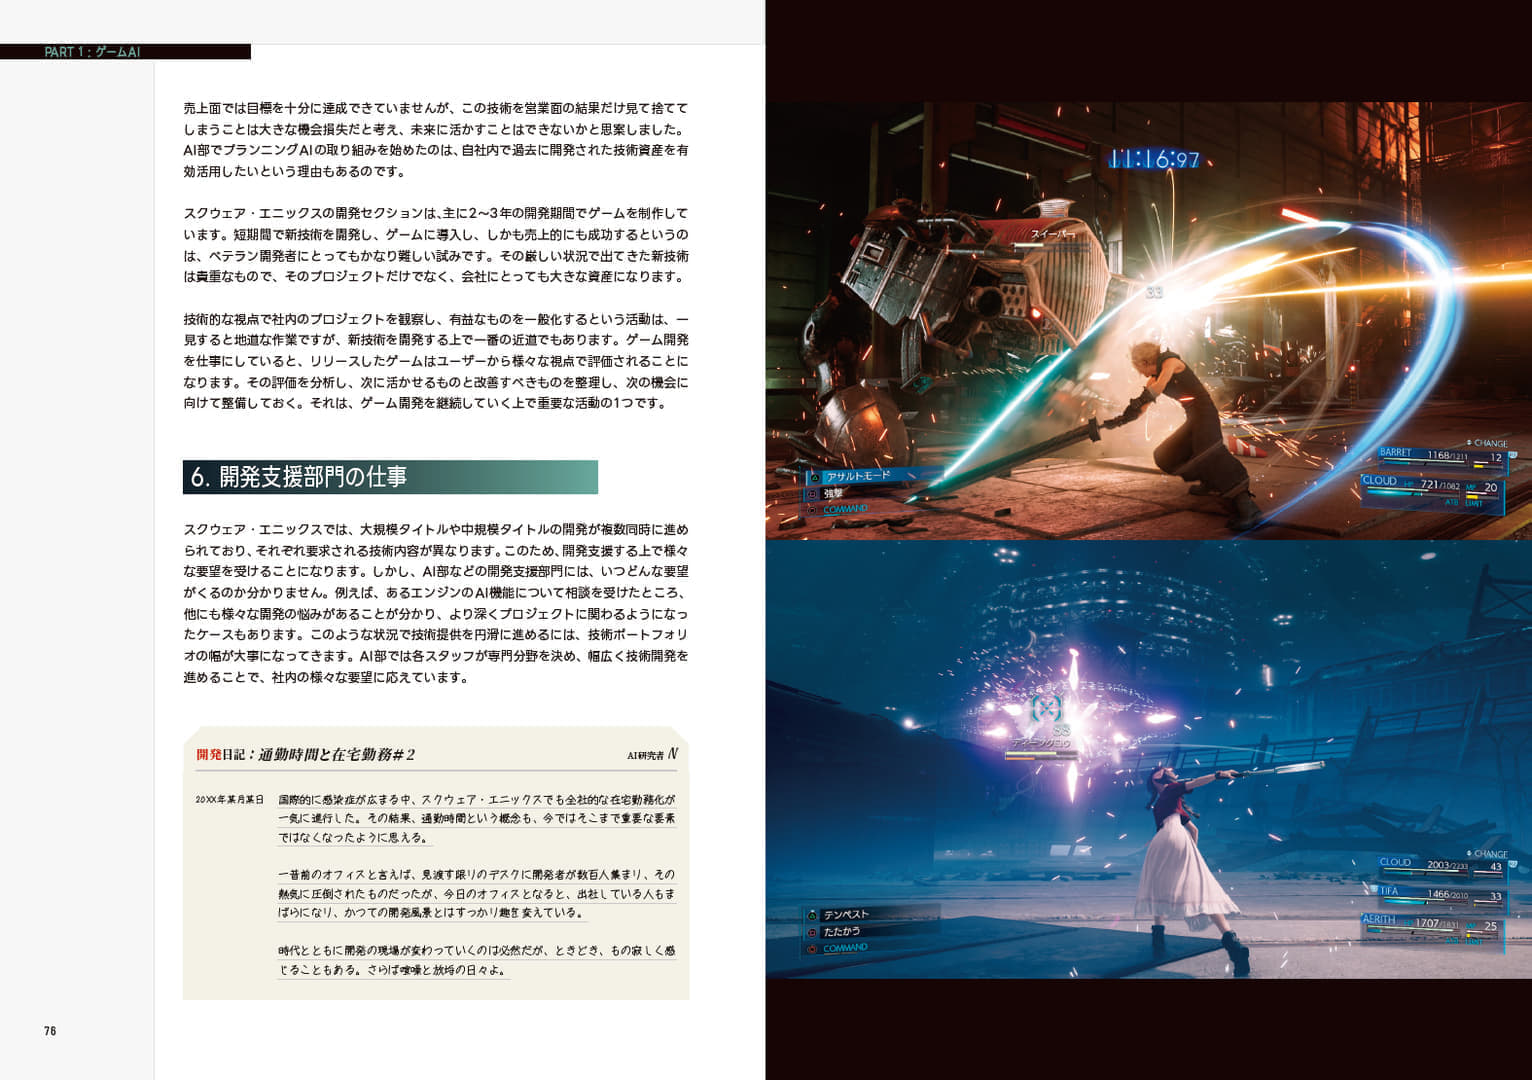 書籍『スクウェア・エニックスのAI』が発売開始。「日本でもっともわかりやすい、デジタルゲームAIの入門書」を目指した書籍_004